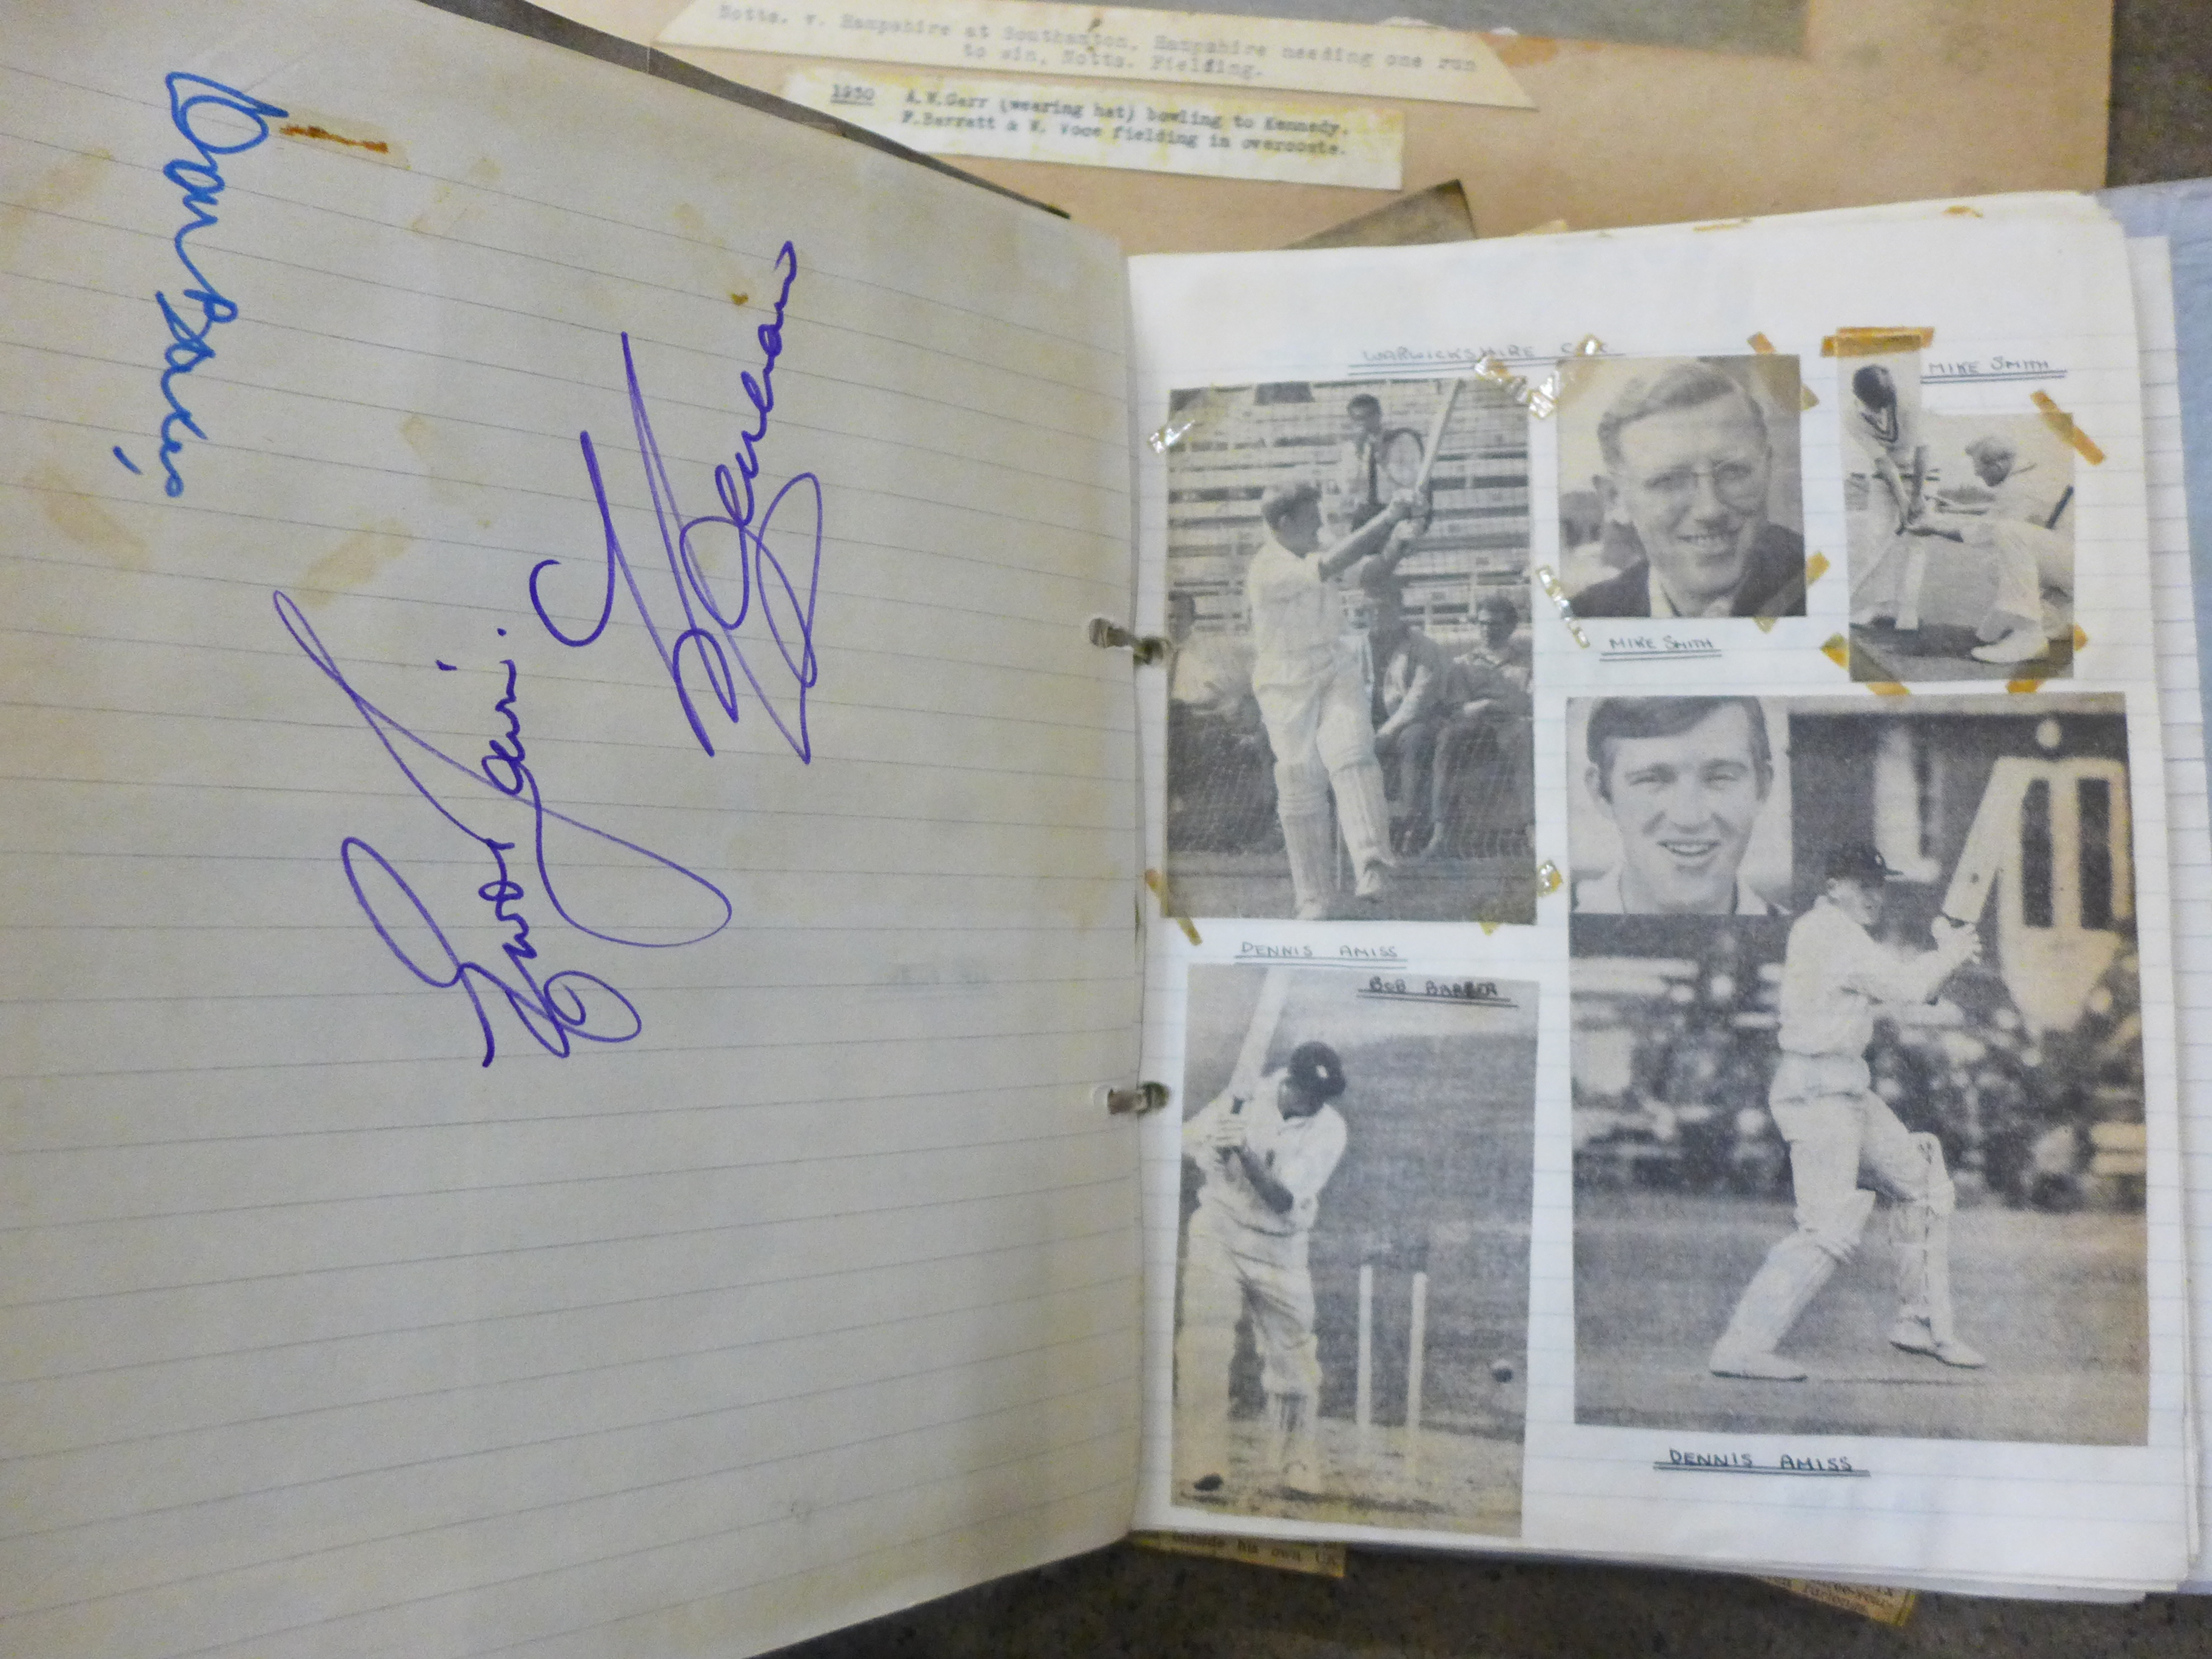 Cricket ephemera and scrap albums with autographs including Larwood, Boycott, Subba Row - Image 12 of 19